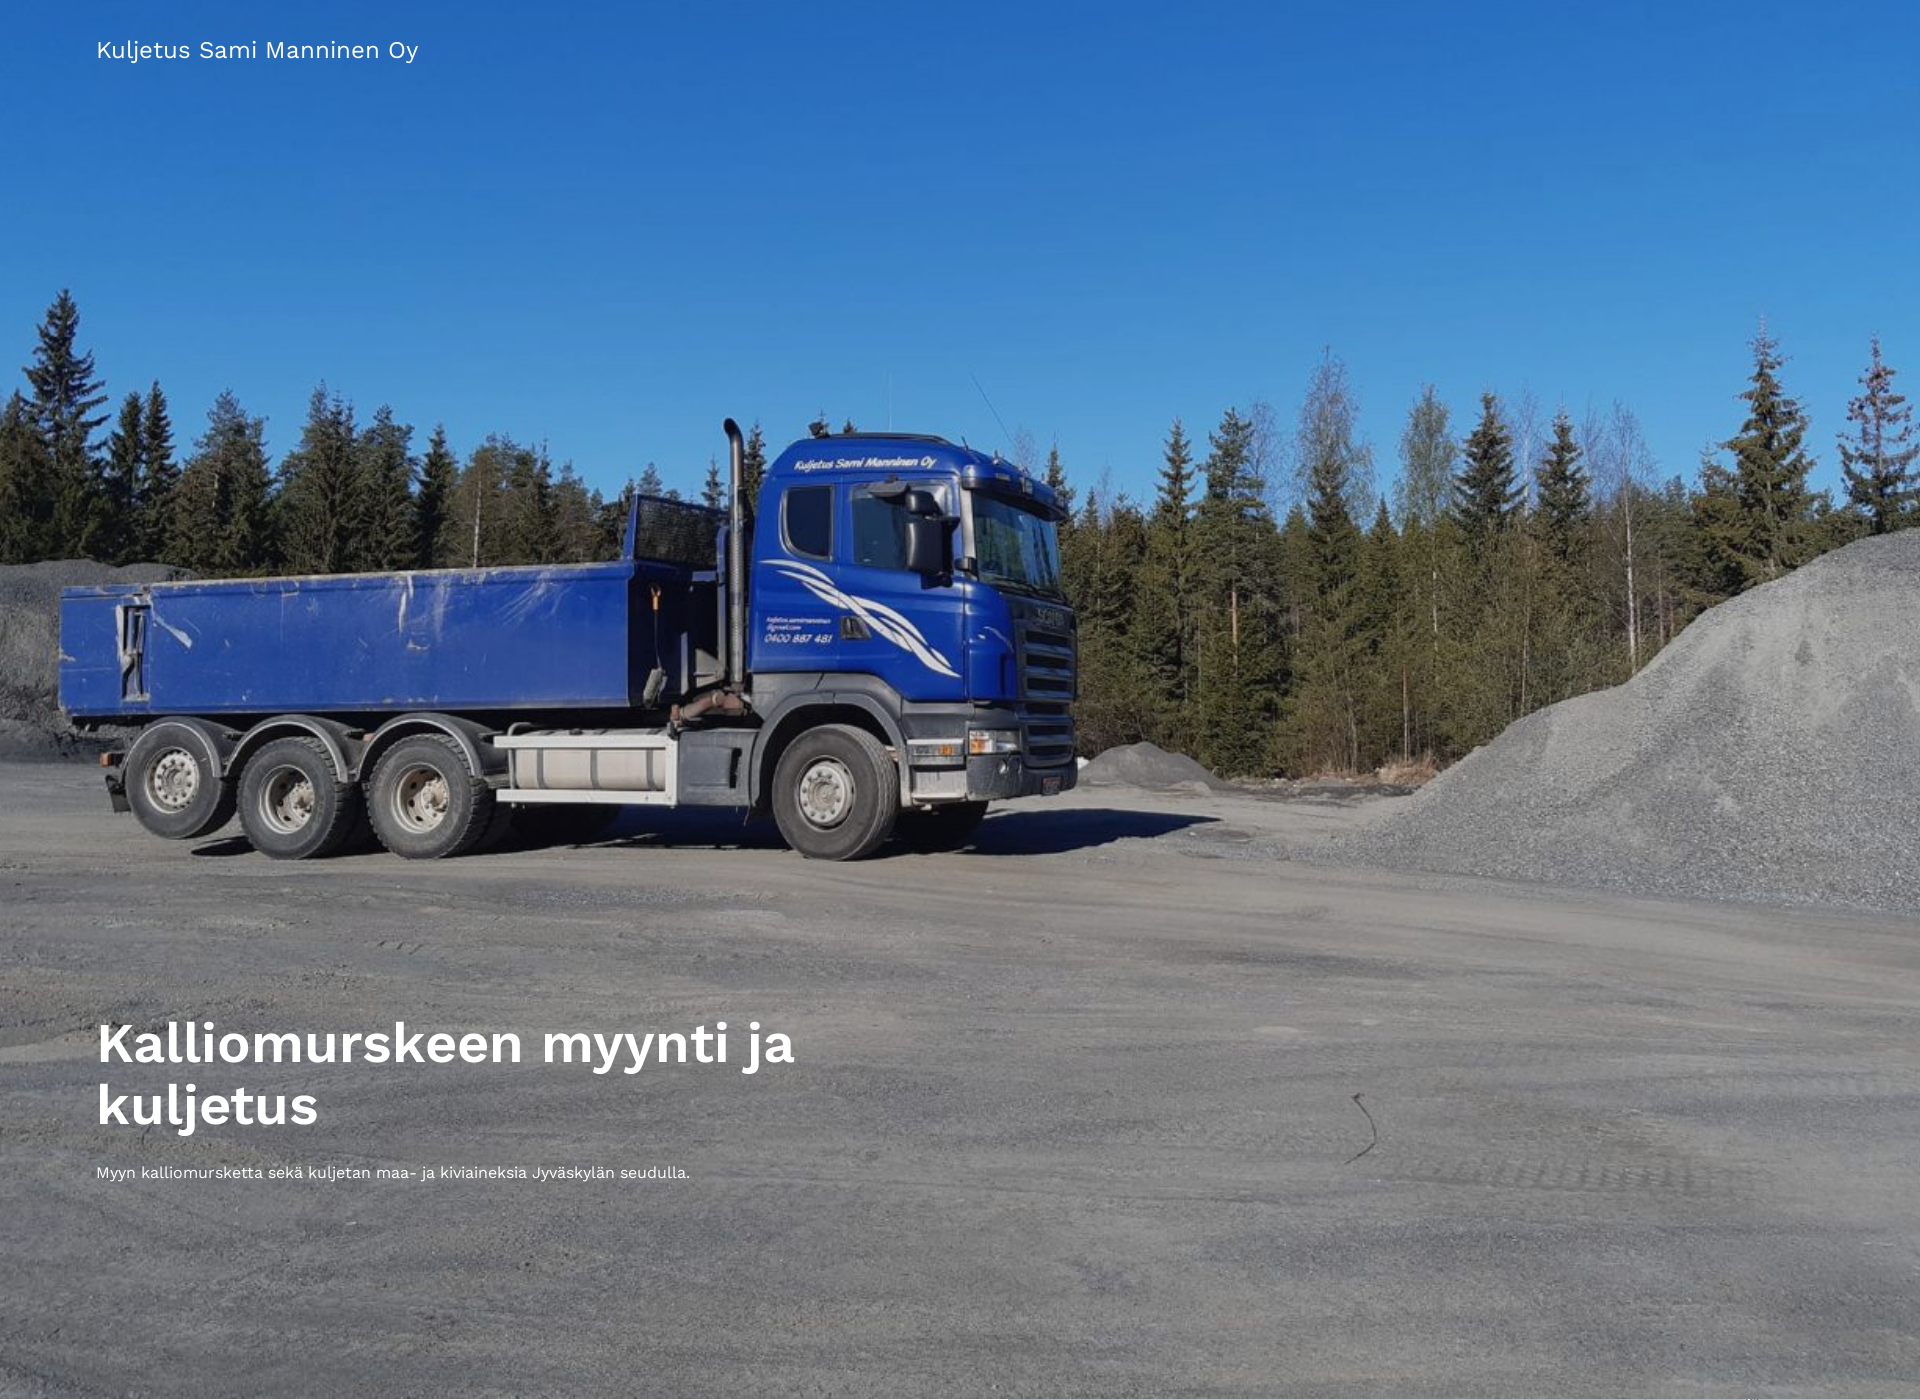 Screenshot for kuljetussamimanninen.fi